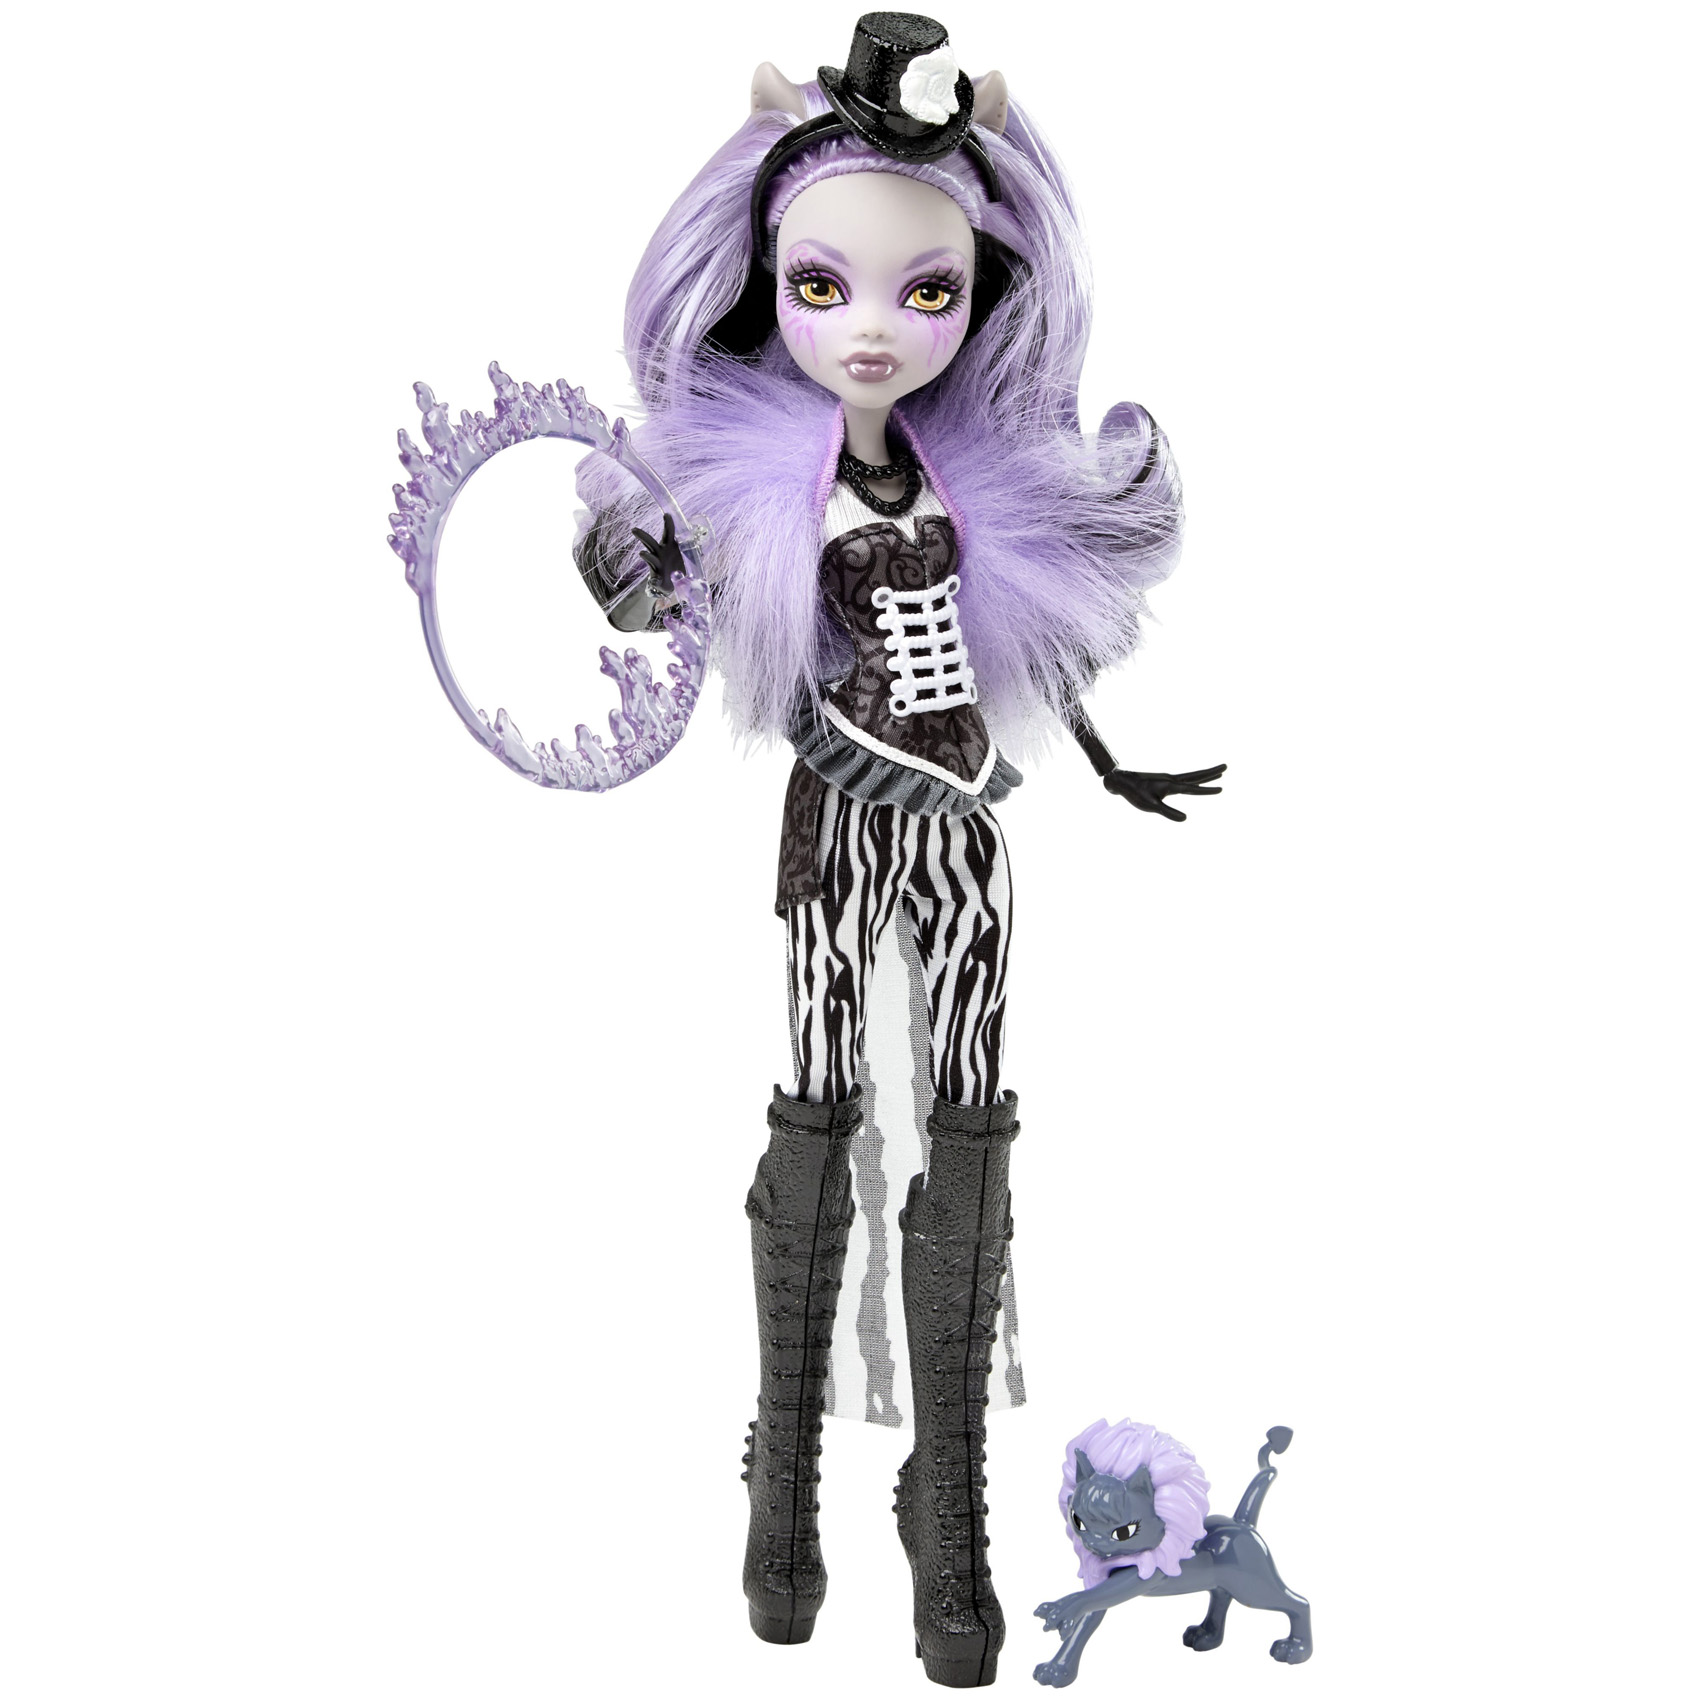 All Monster High Dolls